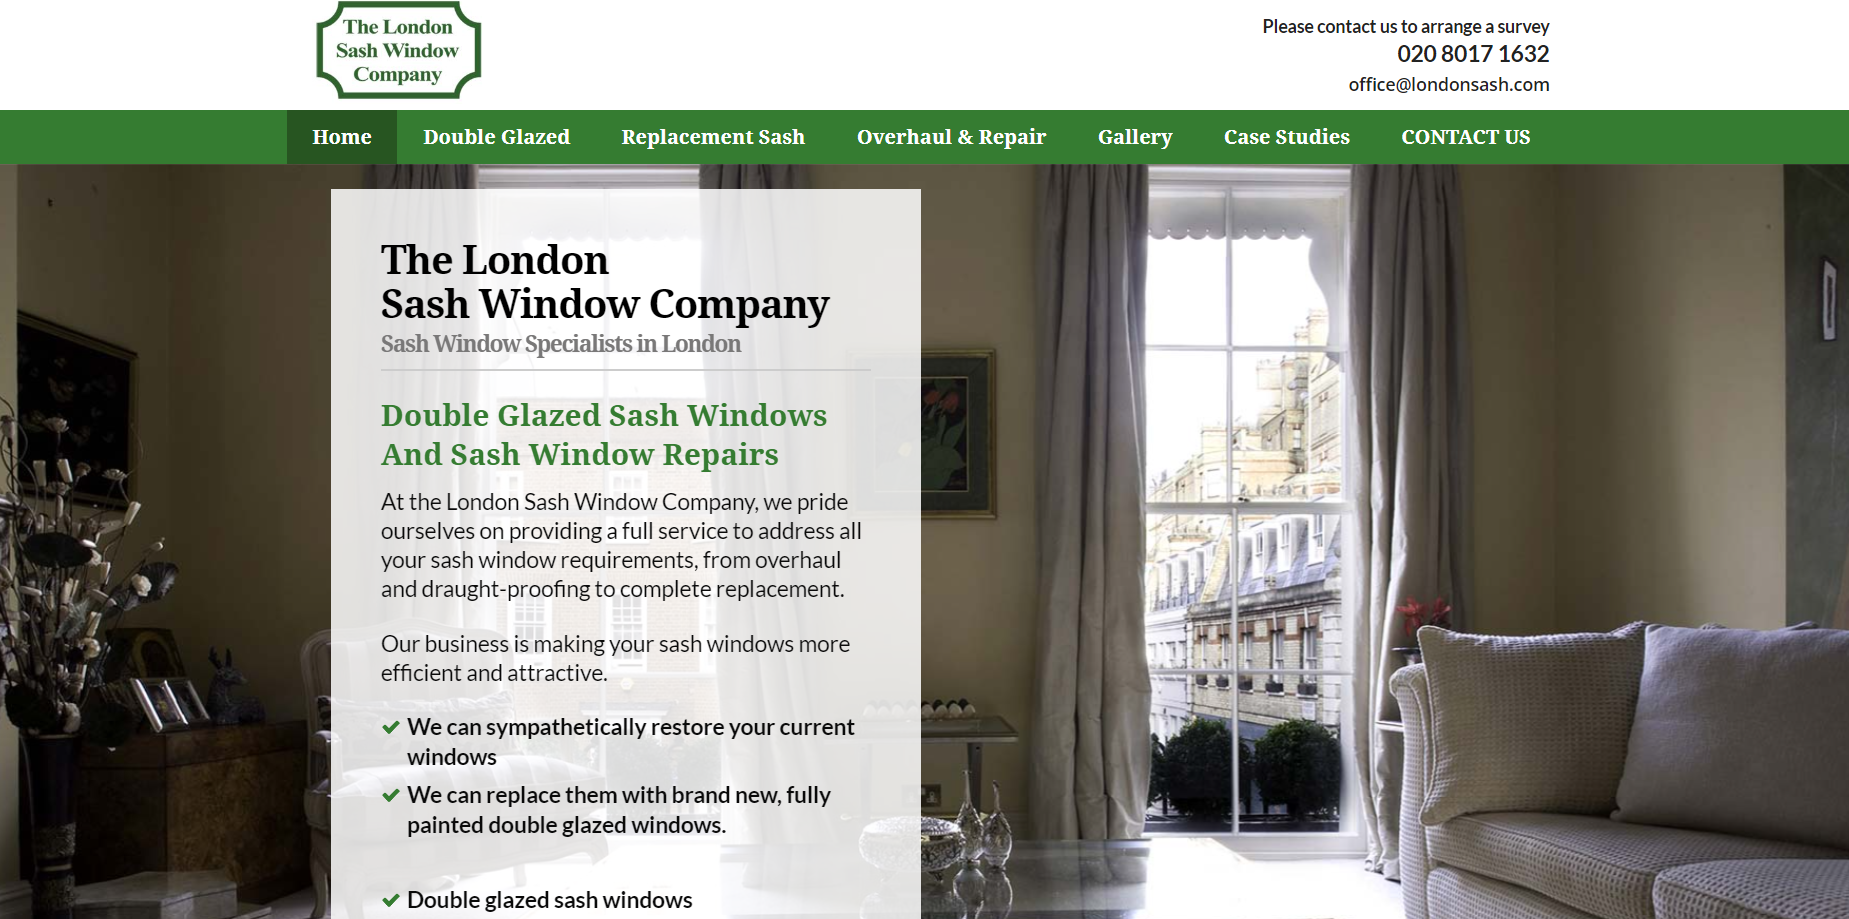 The London Sash Window Company